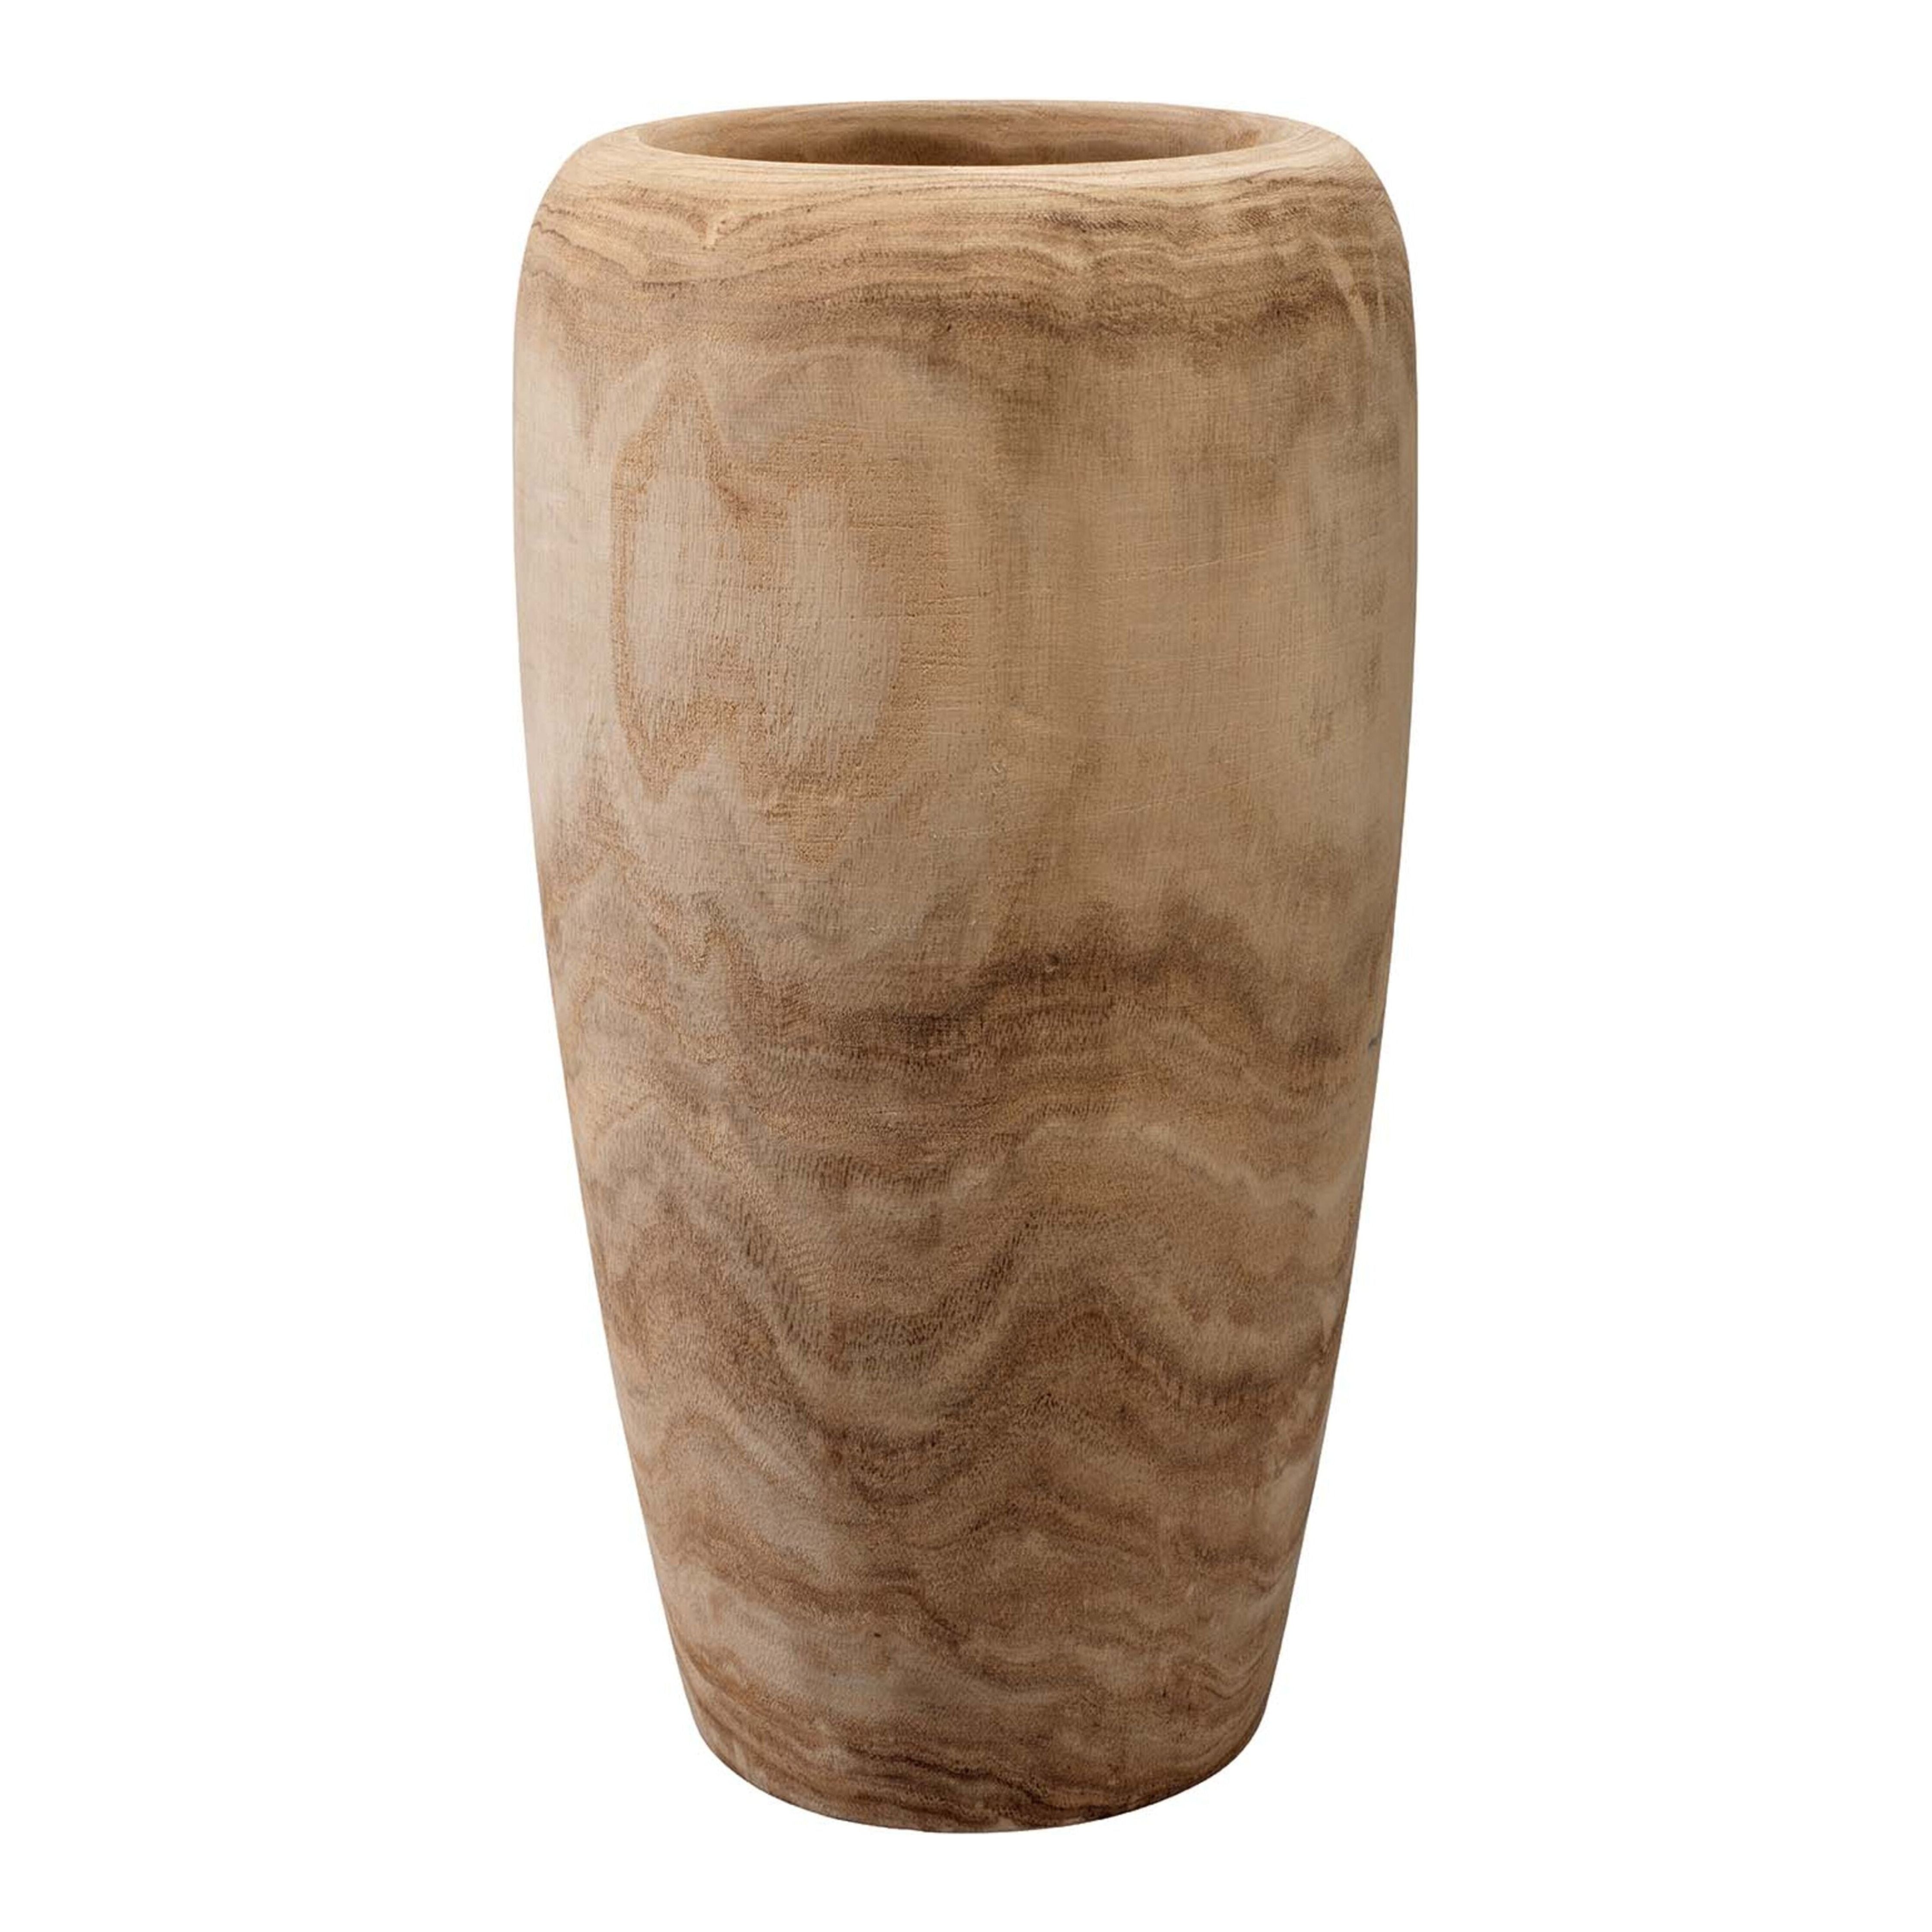 Jamie Young Company - 7OJAI-SMWD - Ojai Wooden Vase - Ojai - Natural